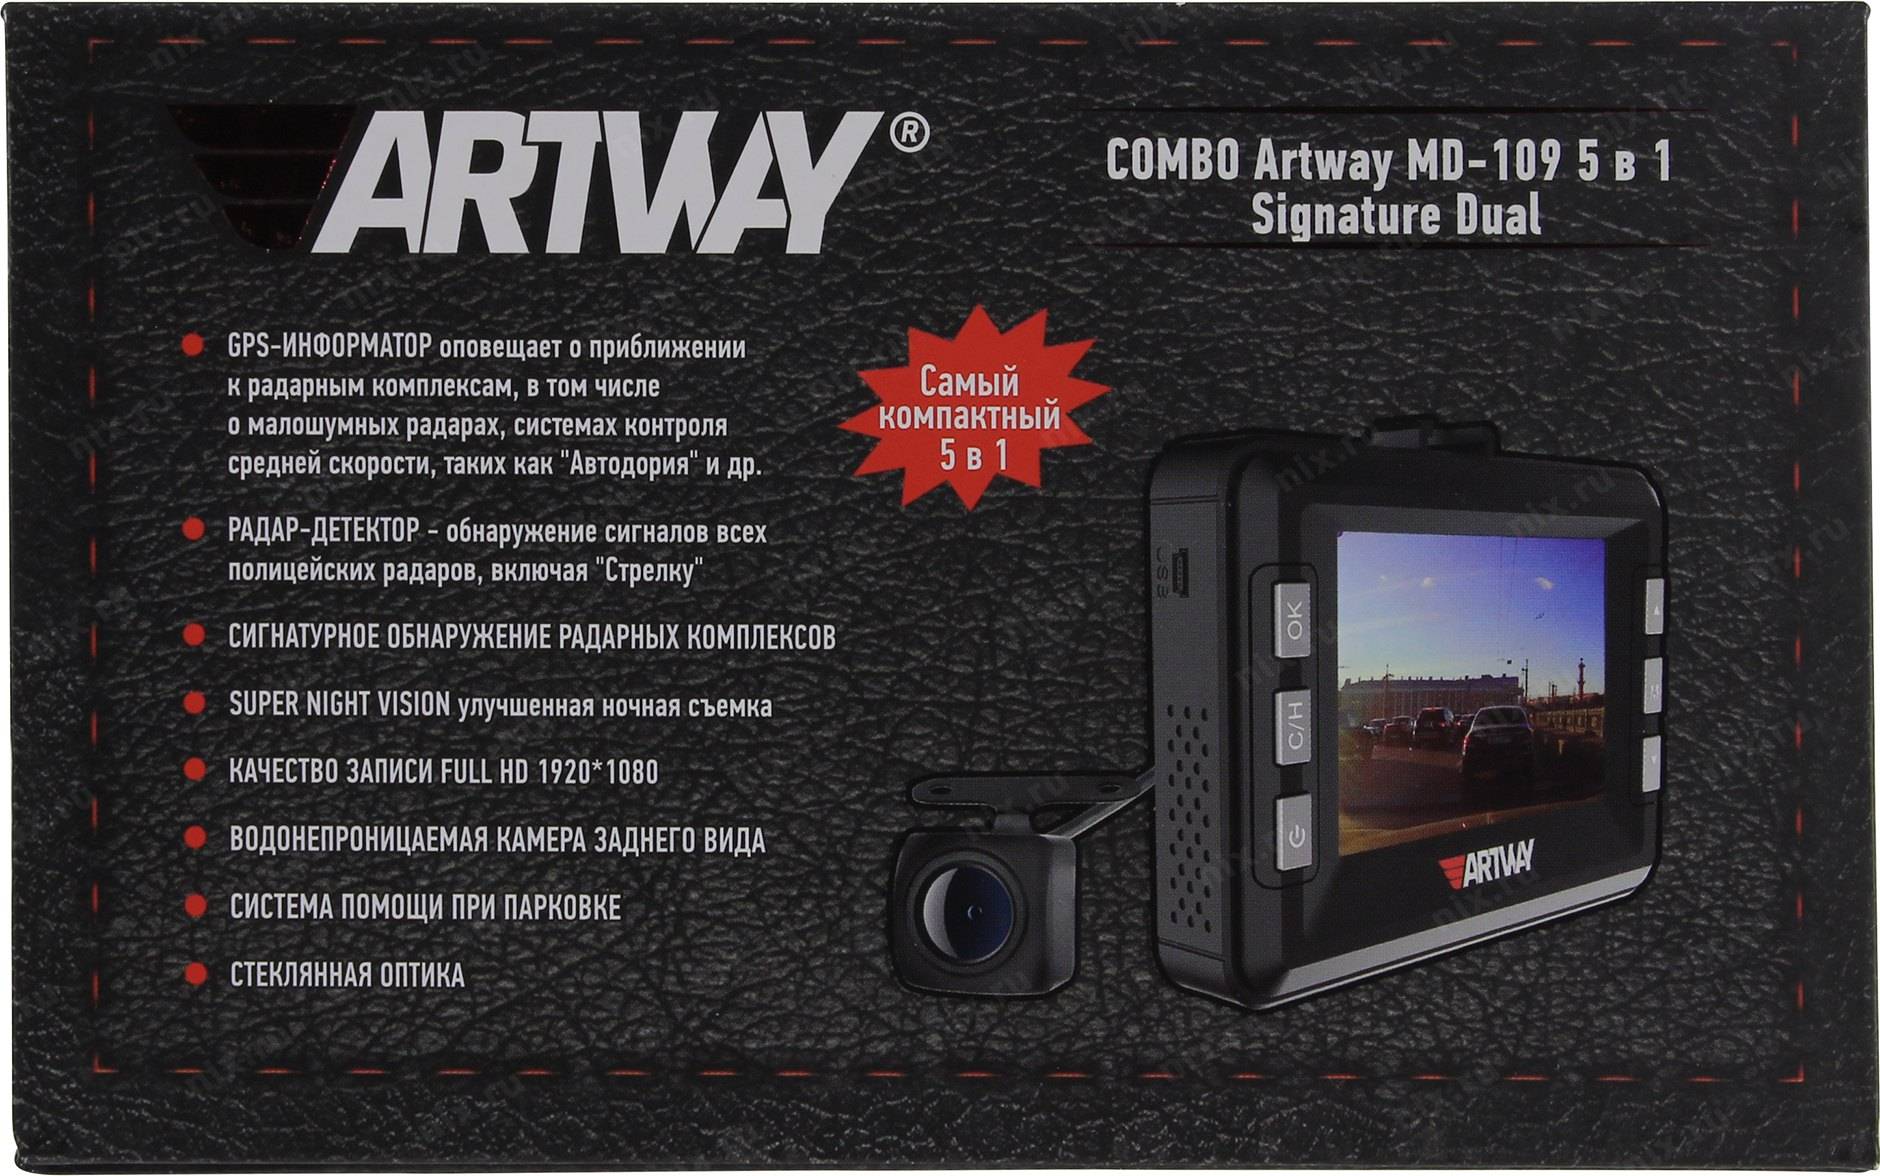 Видеорегистратор artway av-396 - видеозапись 1920*1080, дисплей 3 дюйма, угол обзора 170 градусов, поддержка карт памяти 8-32 гб